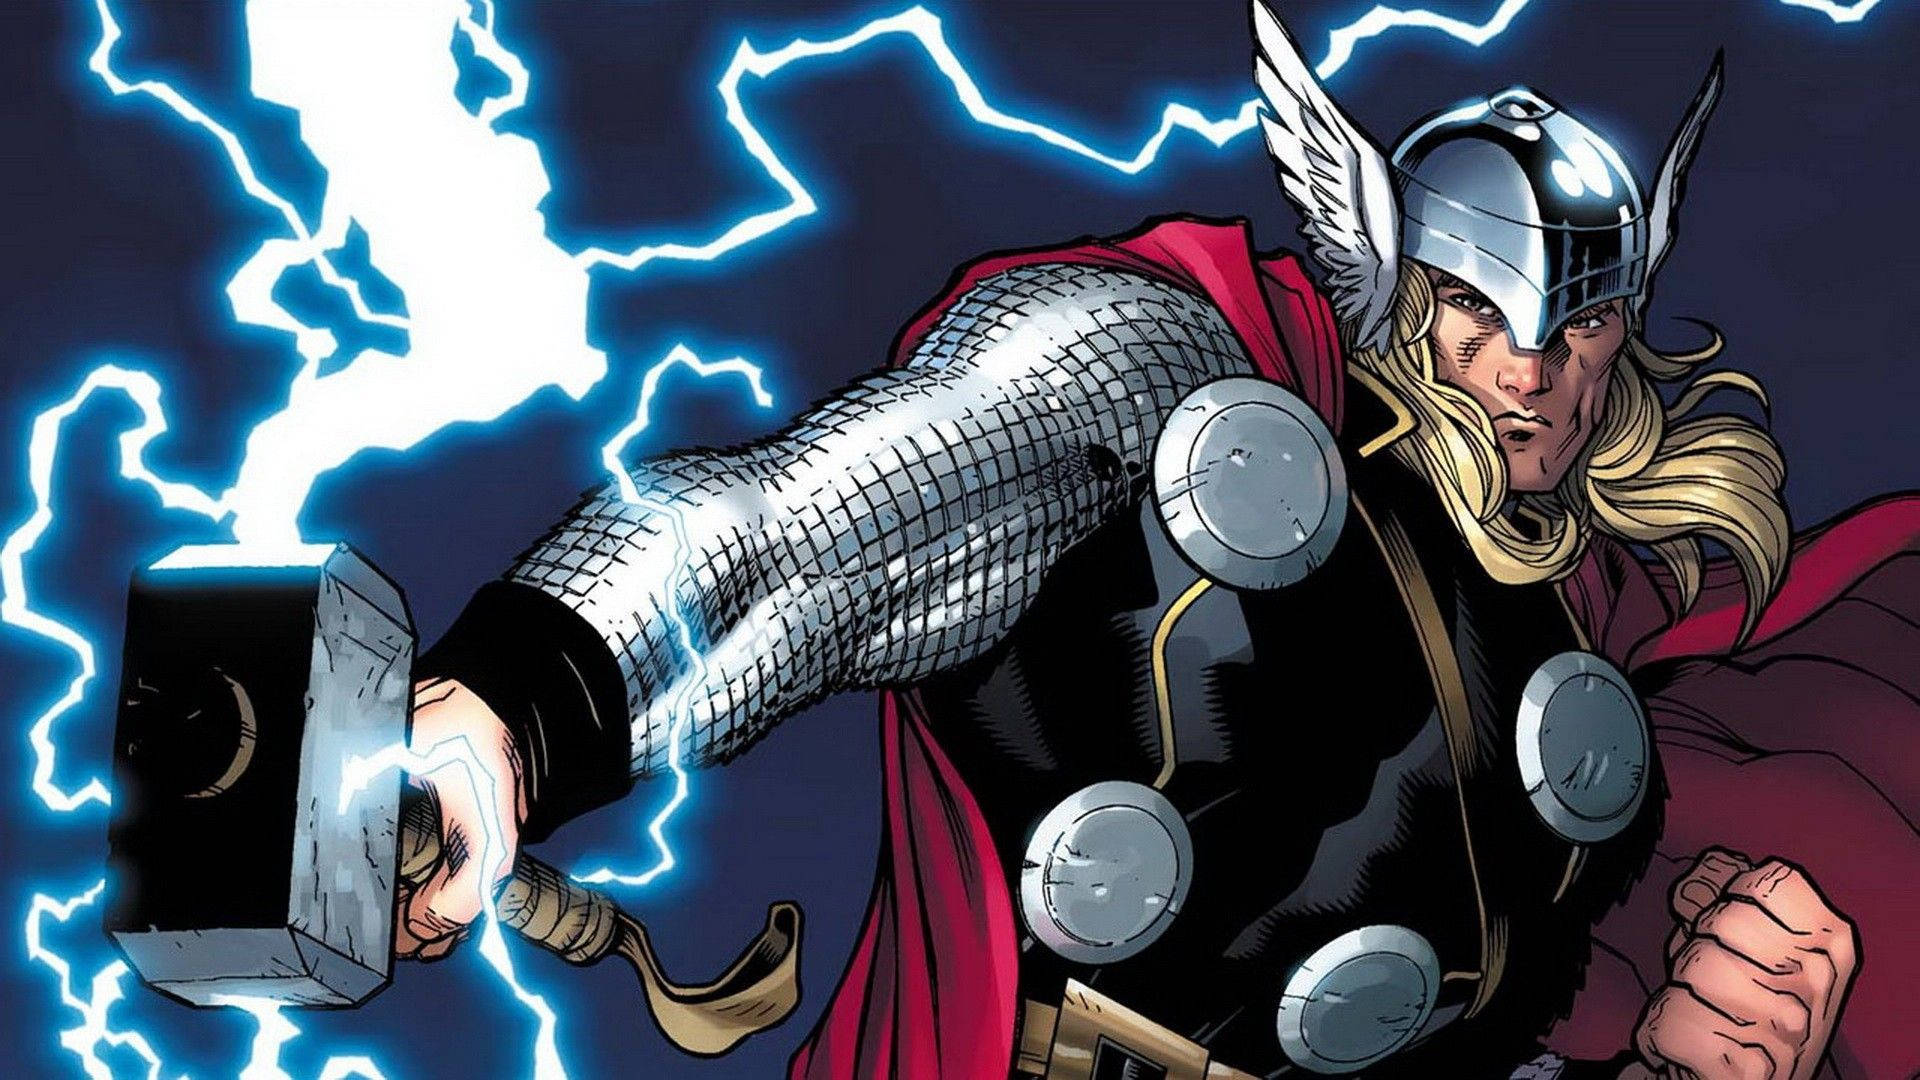 Thor Superhero Animated Poster Background